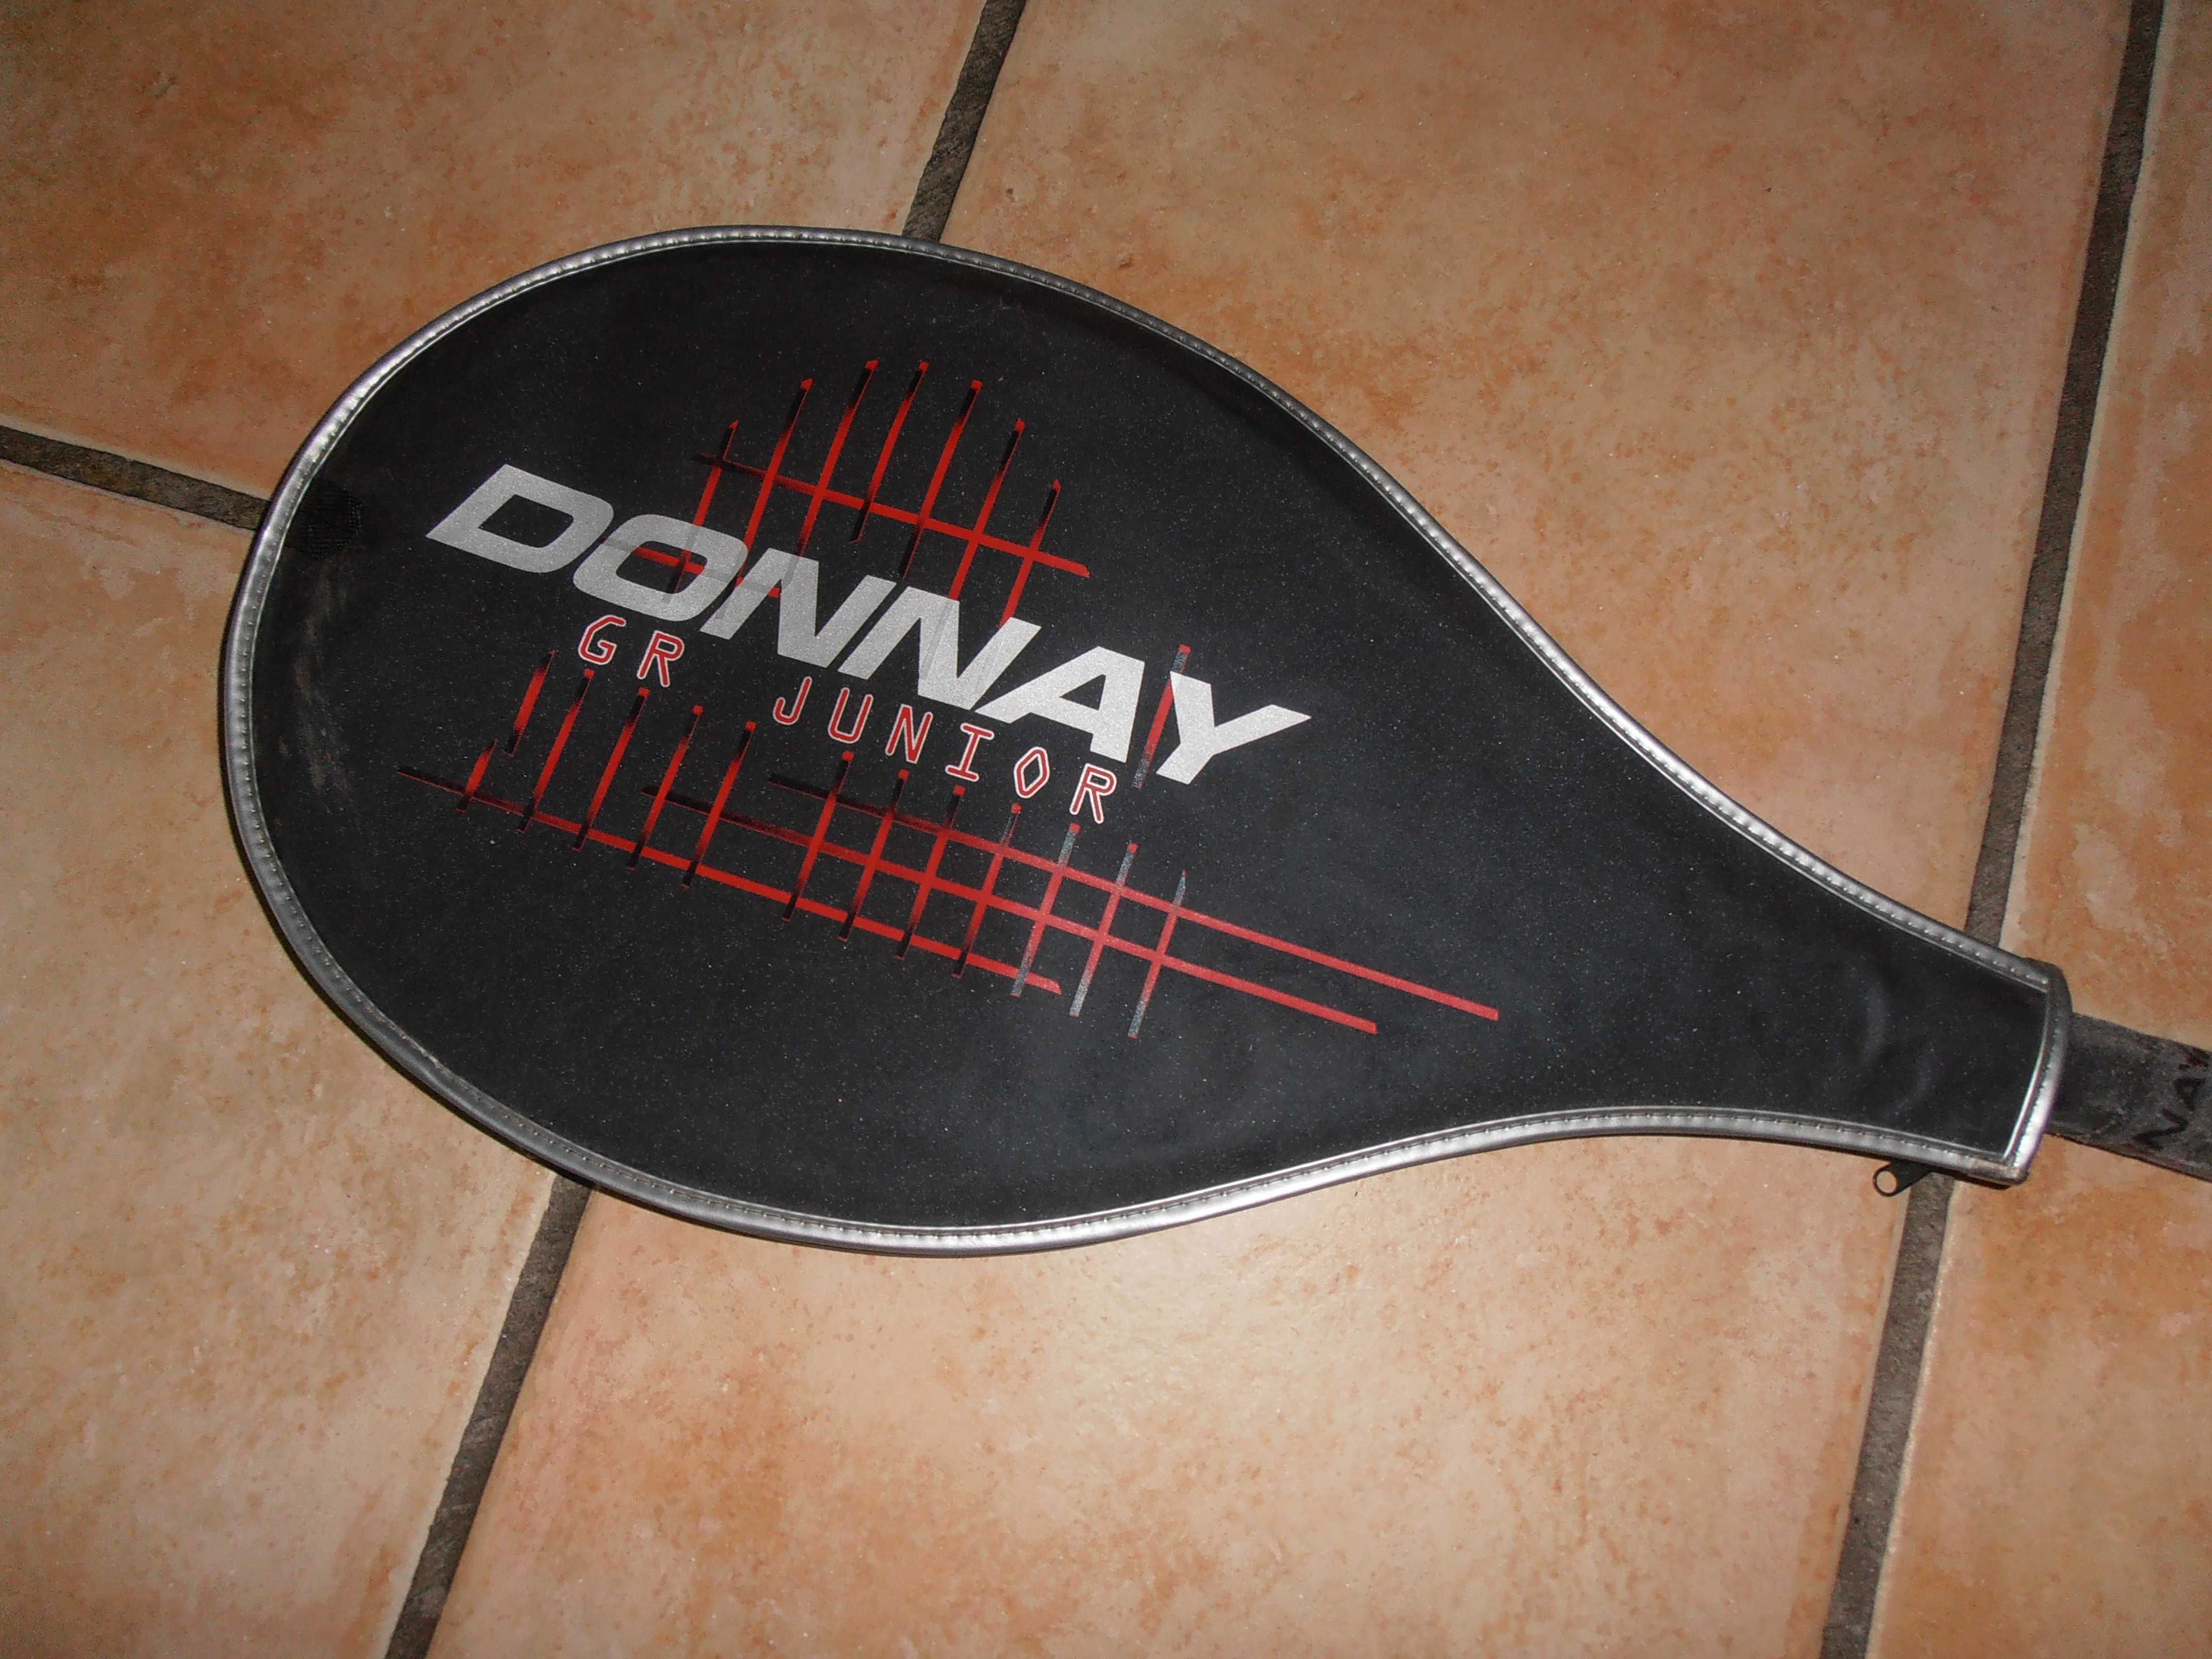 raquete de ténis- donnay gr junior, bom estado